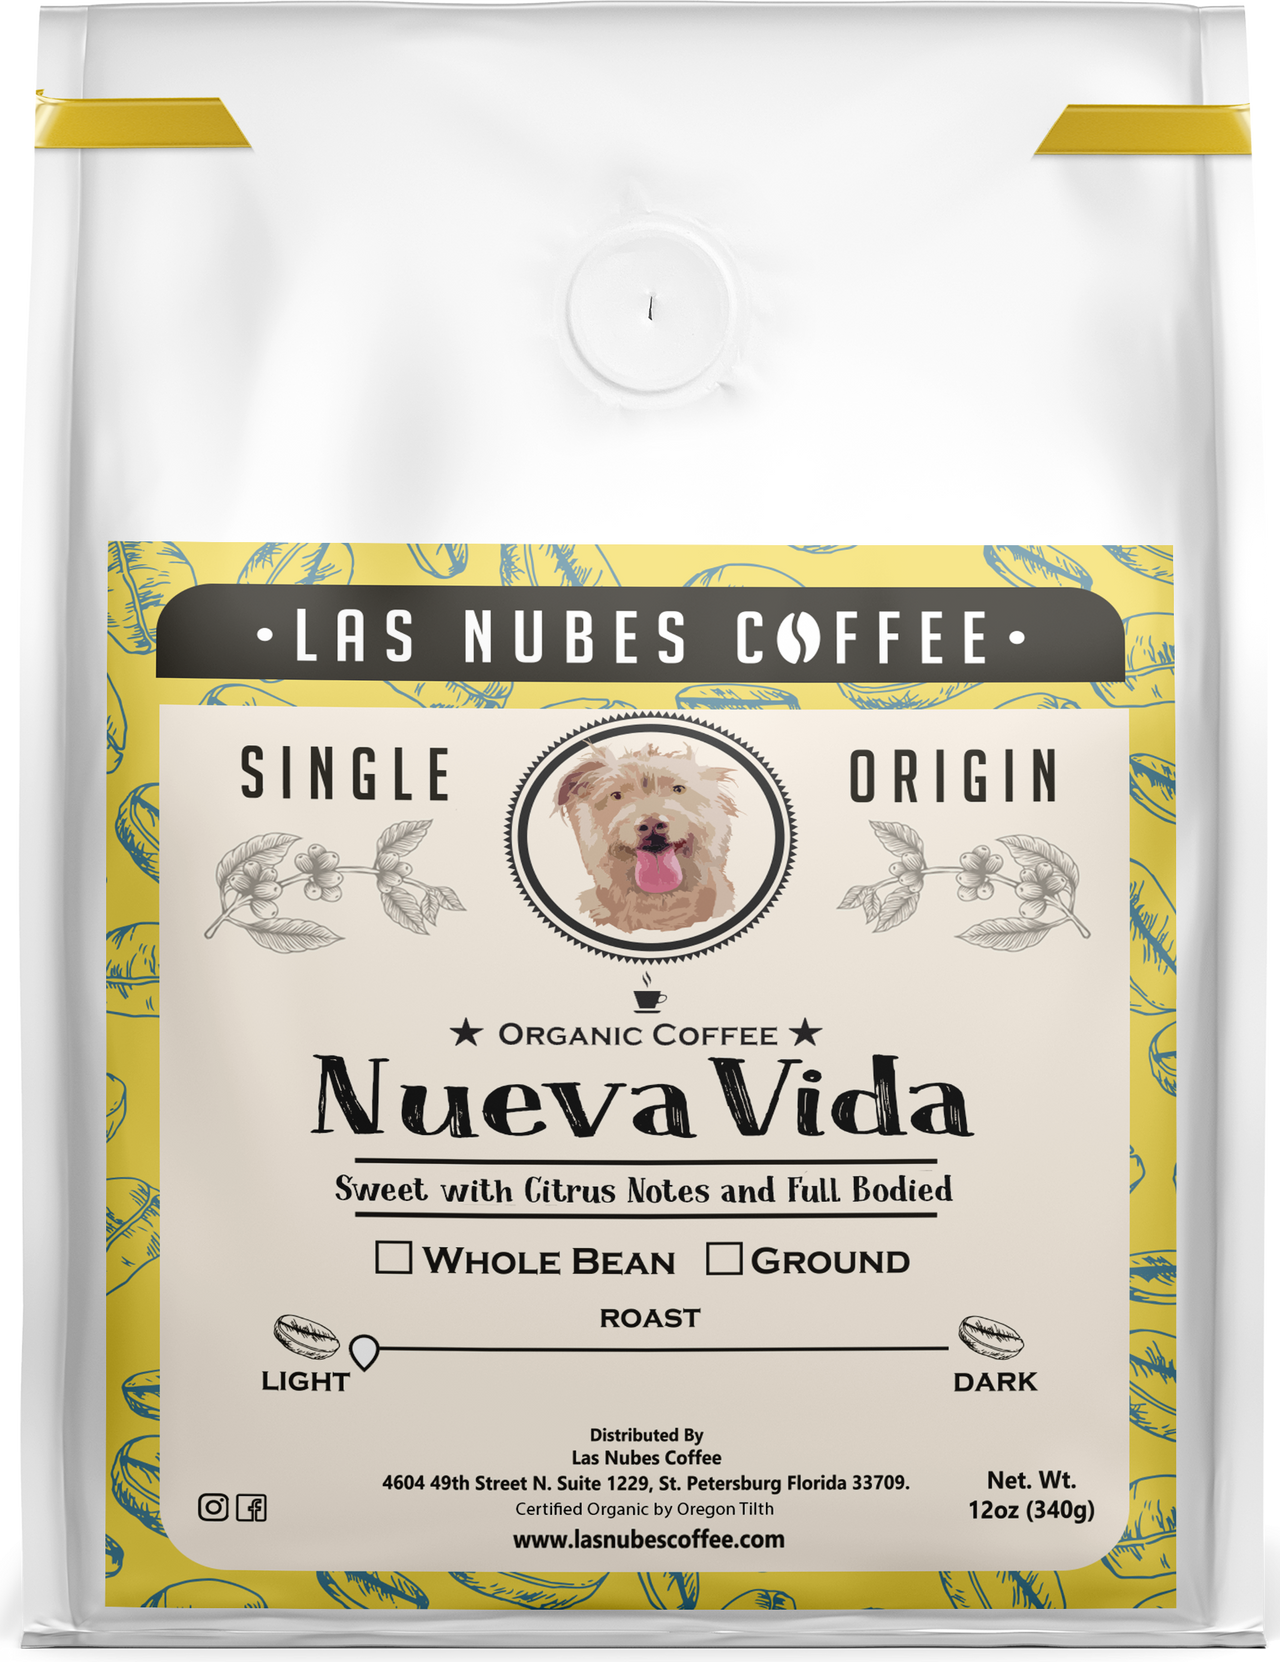 Las Nubes Coffee, Nueva Vida (New Life), Light Roast, Whole Bean, 12 oz